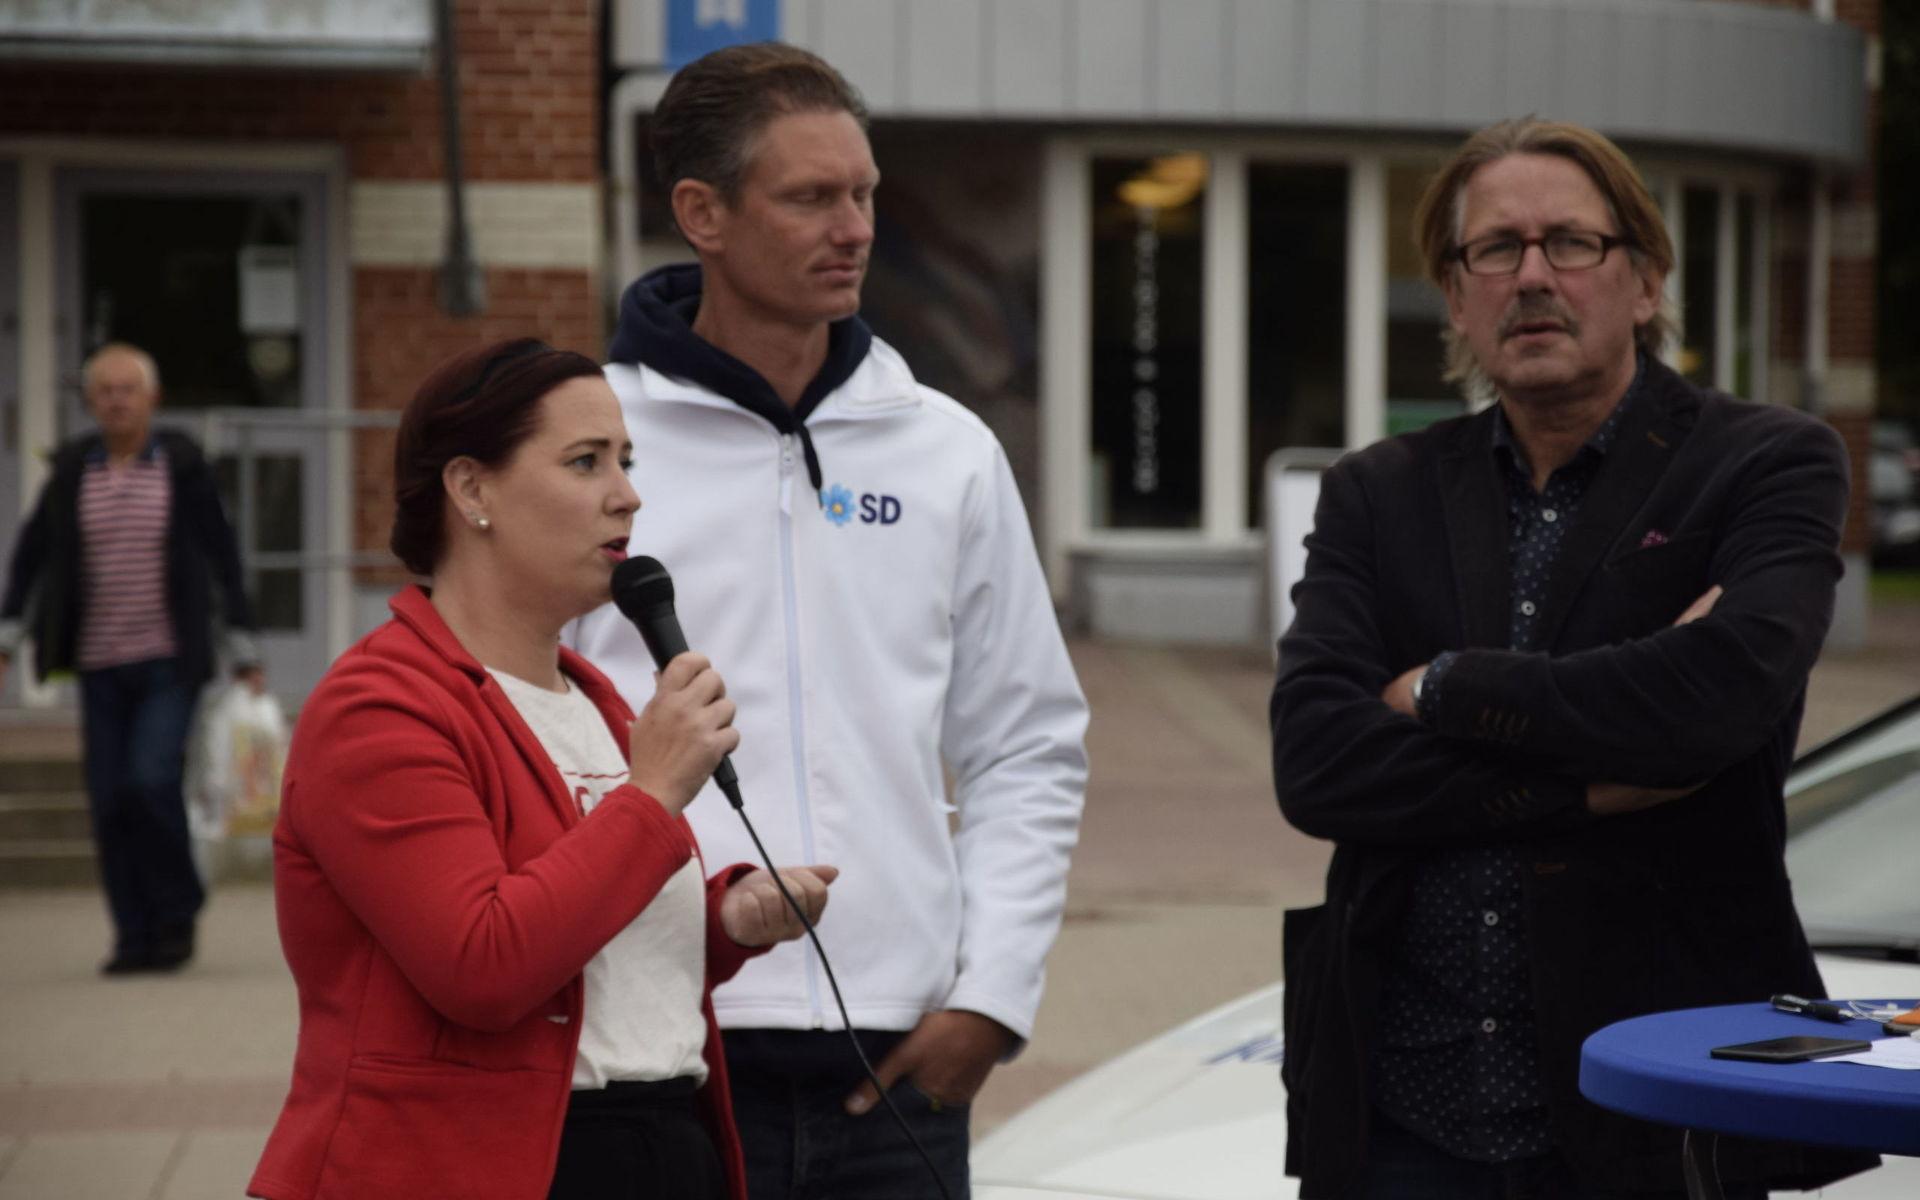 Liza Kettil (S), Matheus Enholm (SD) och Olle Olsson deltog i debatten.